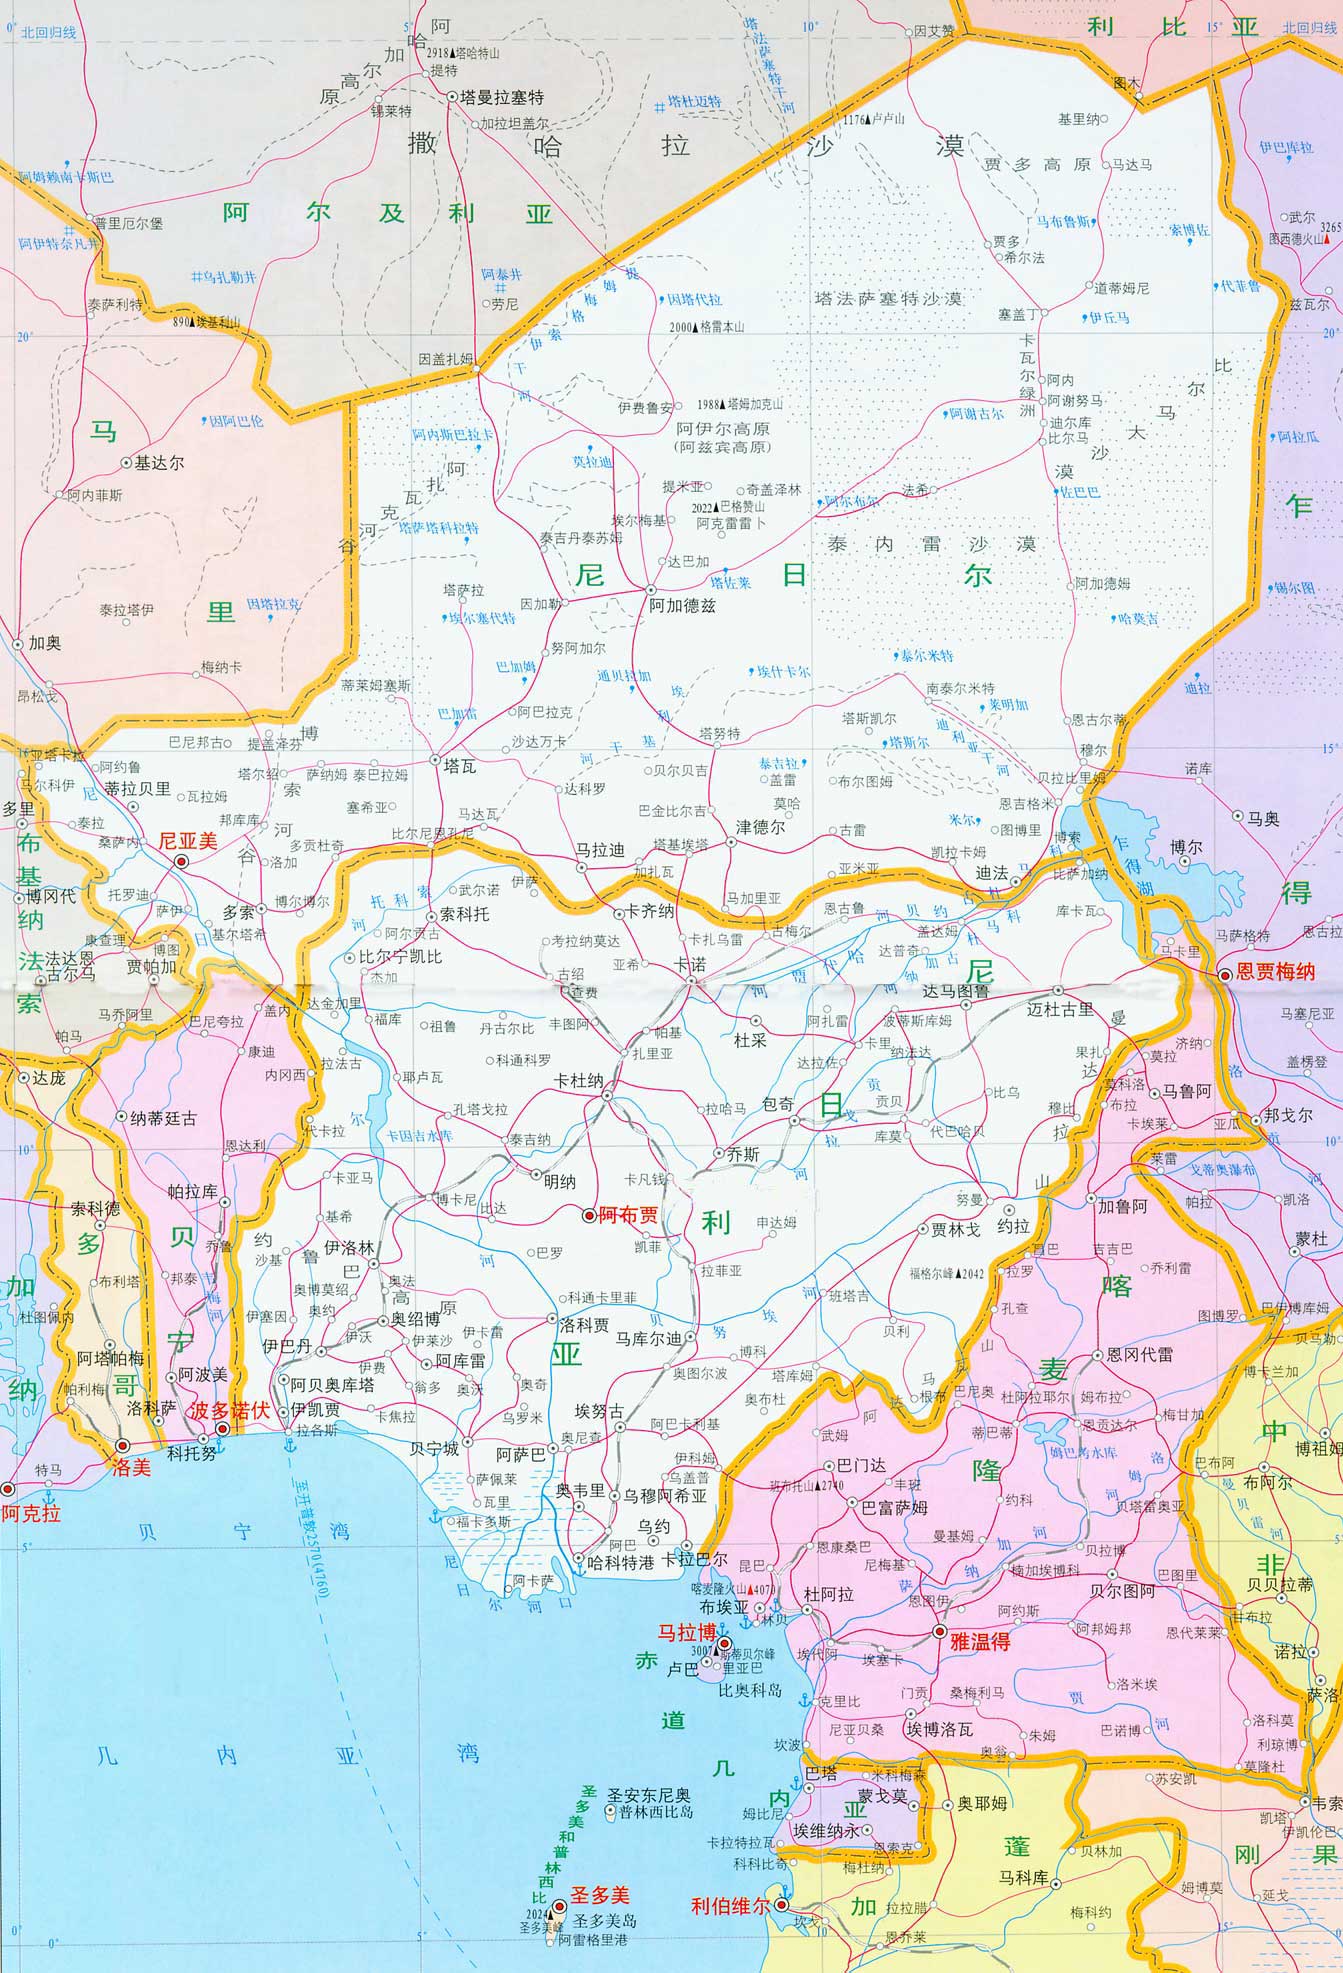 尼日尔地图高清中文版